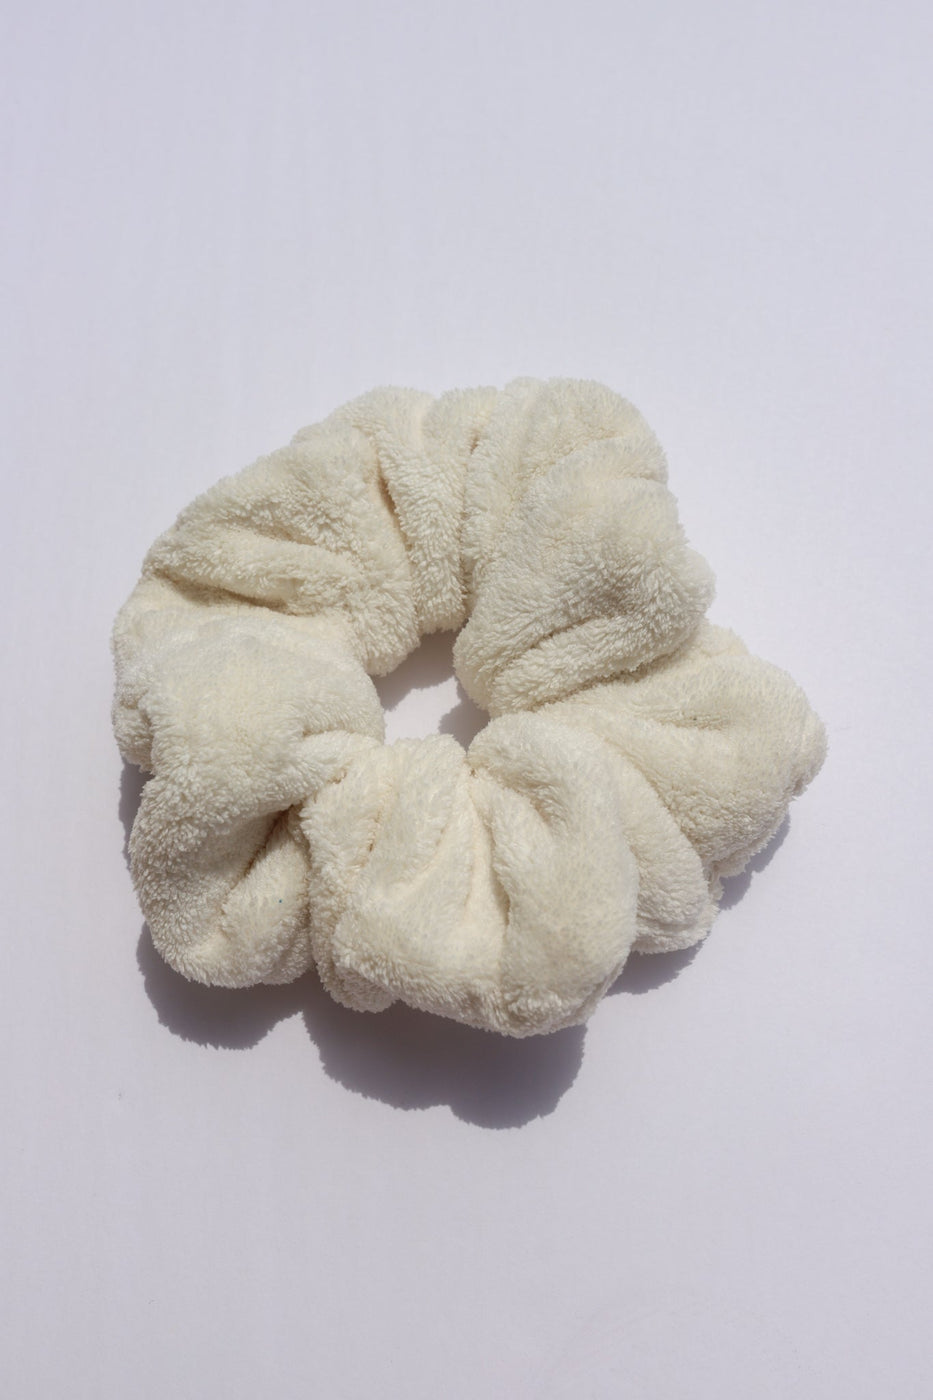 a white hair scrunchie on a white surface